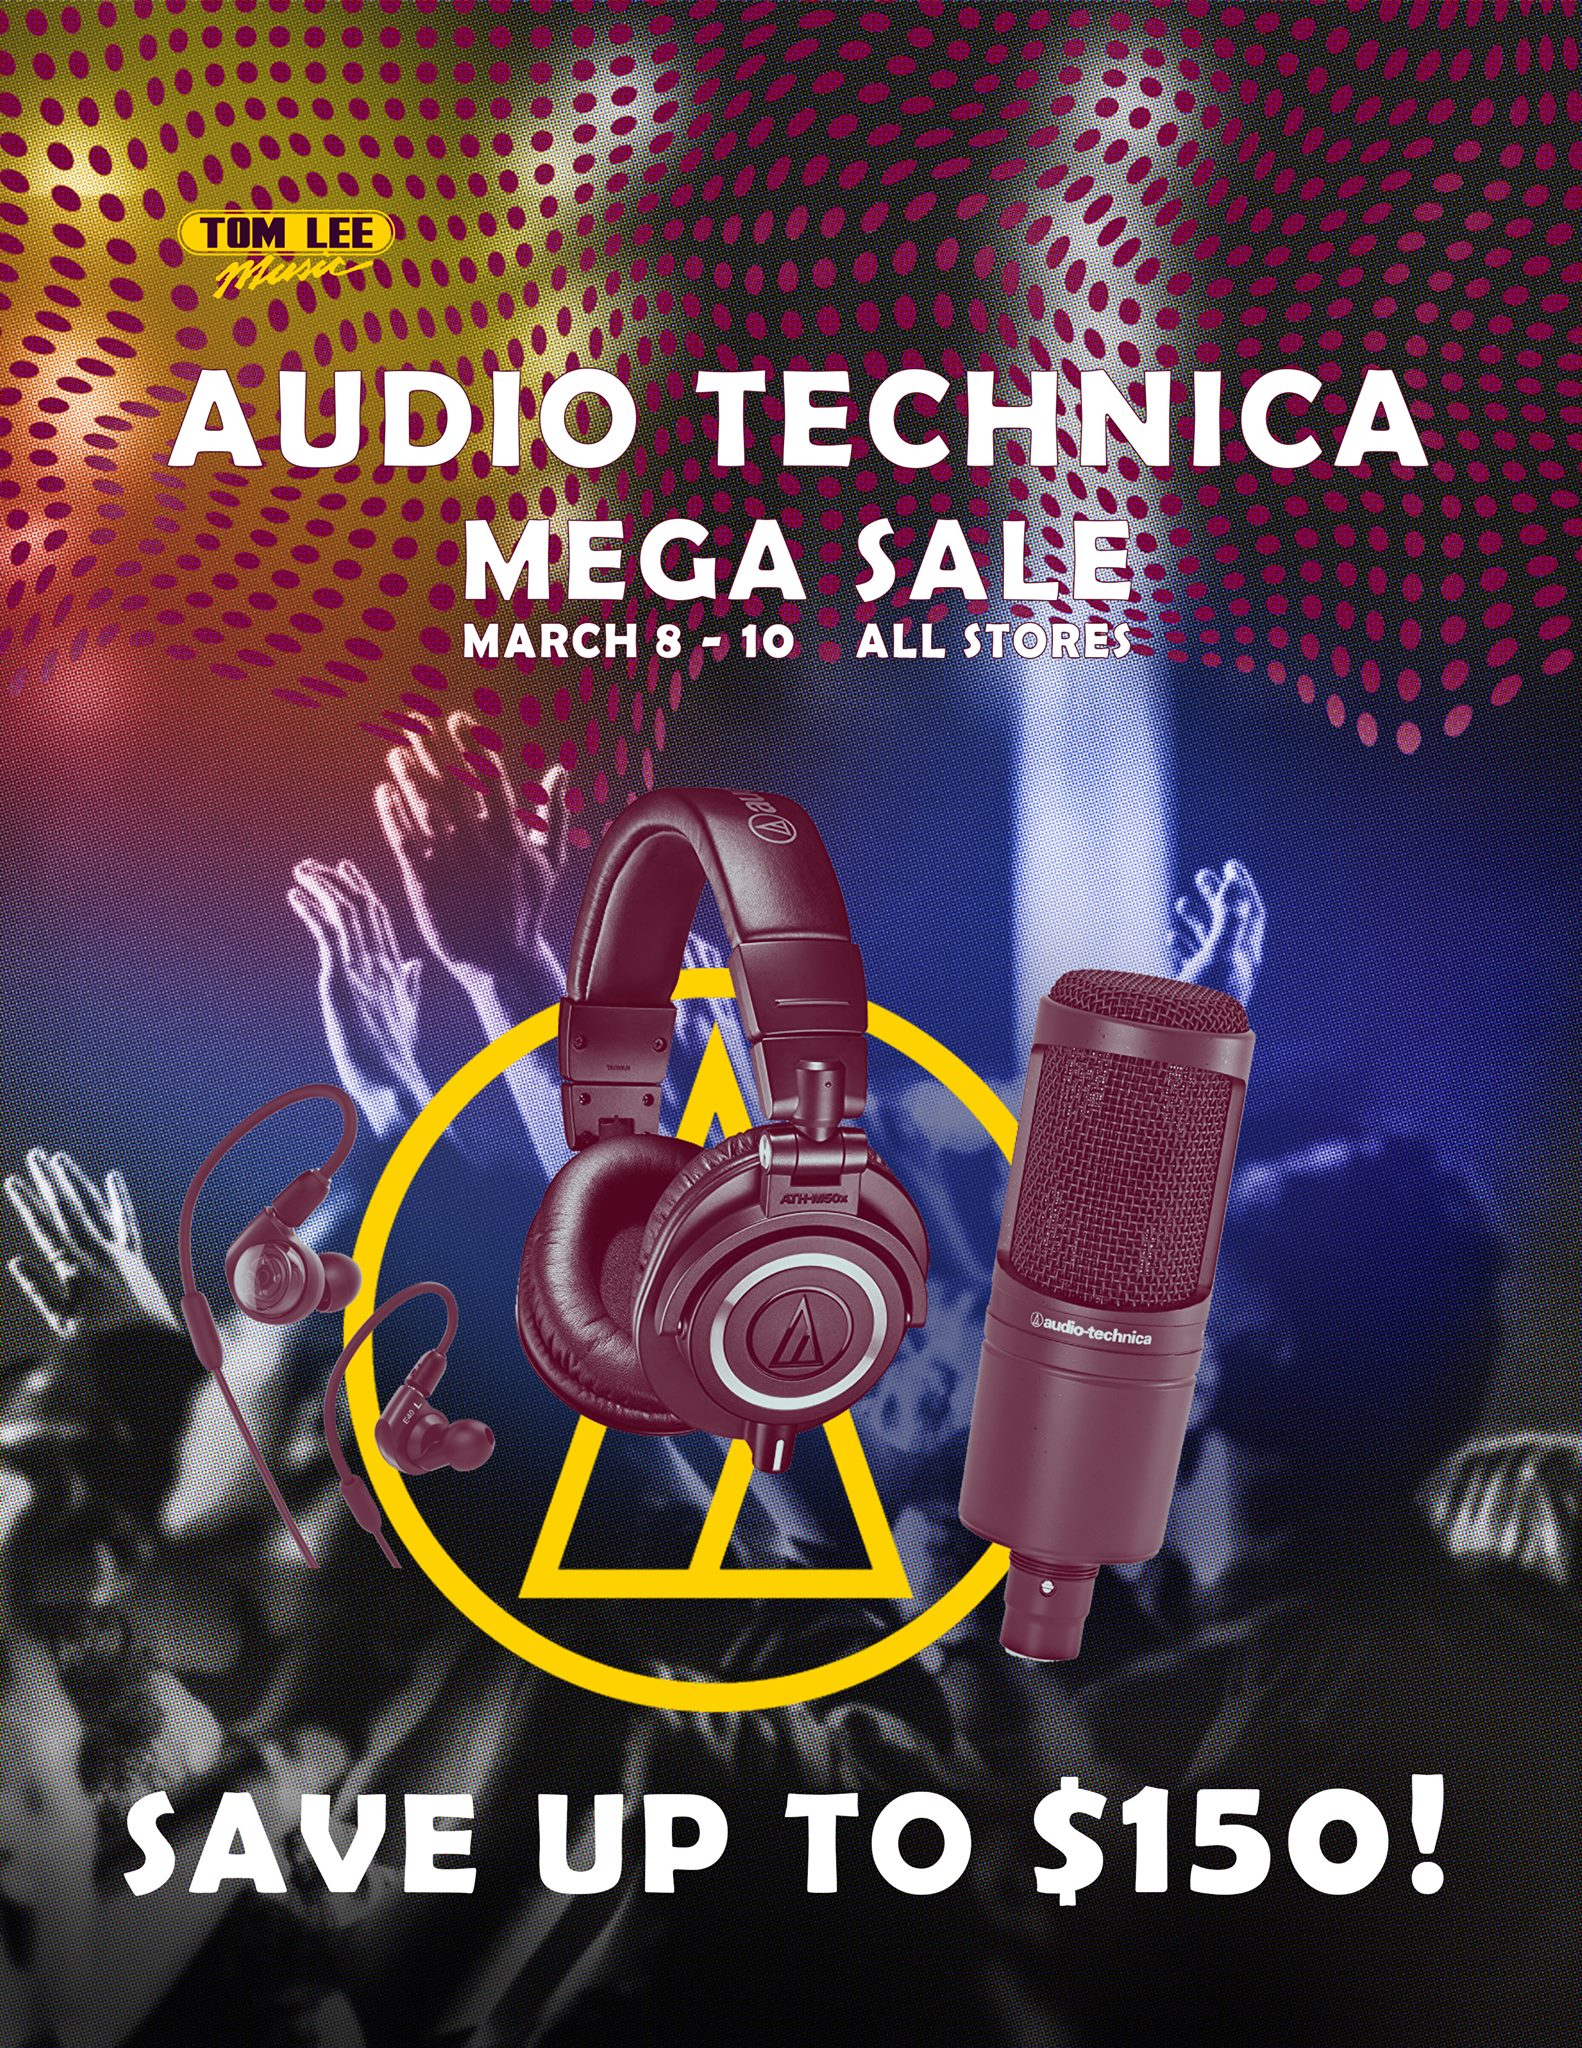 Audio-technica-mega-sale